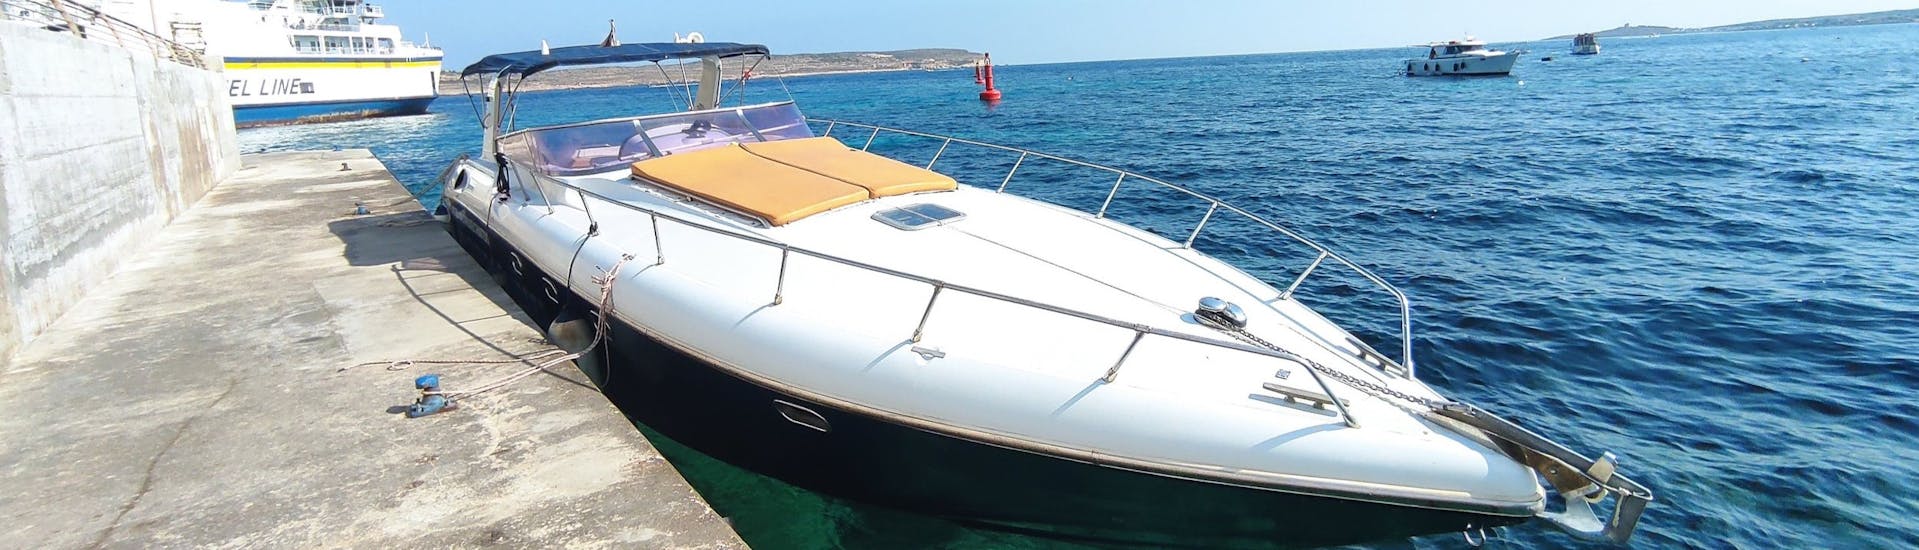 Das Boot, dass verwendet wird während der Private Bootstour in Comino mit Schnorcheln.